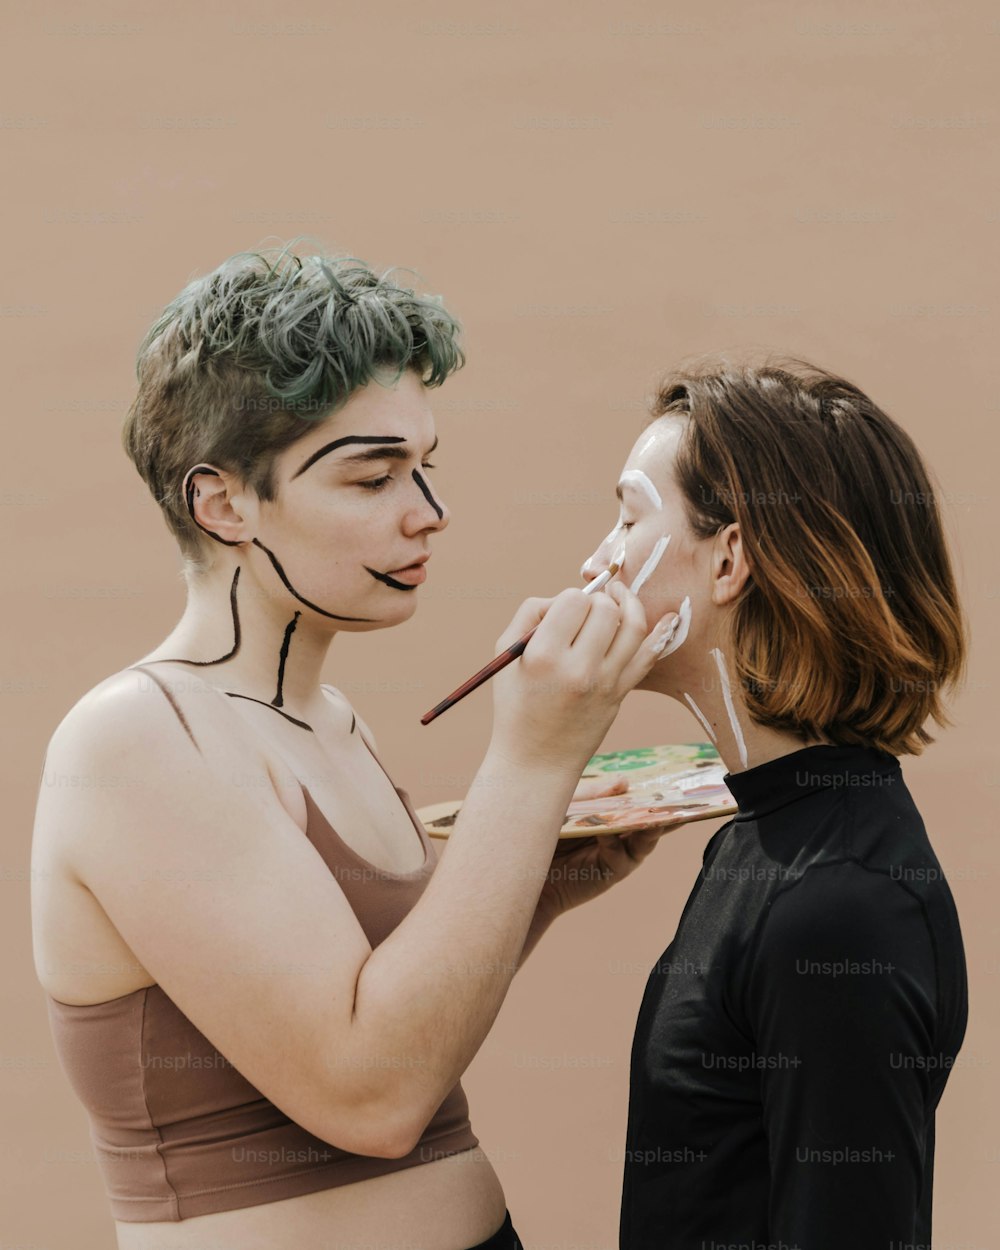 Eine Frau malt das Gesicht einer anderen Frau mit weißer Farbe